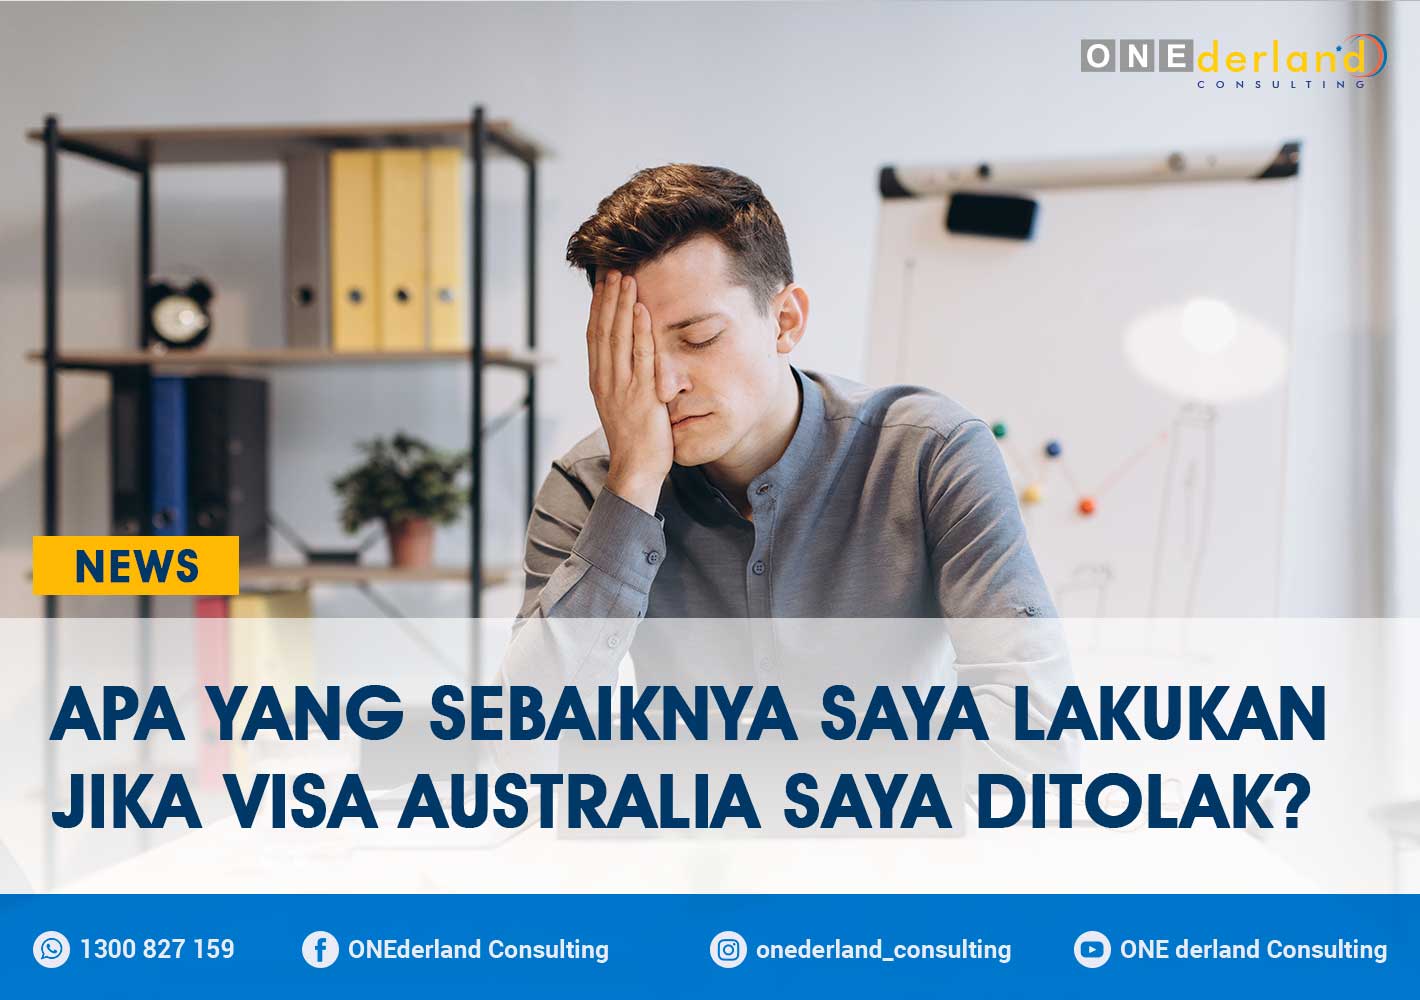 Apa yang Sebaiknya Saya Lakukan Jika Visa Australia Saya Ditolak